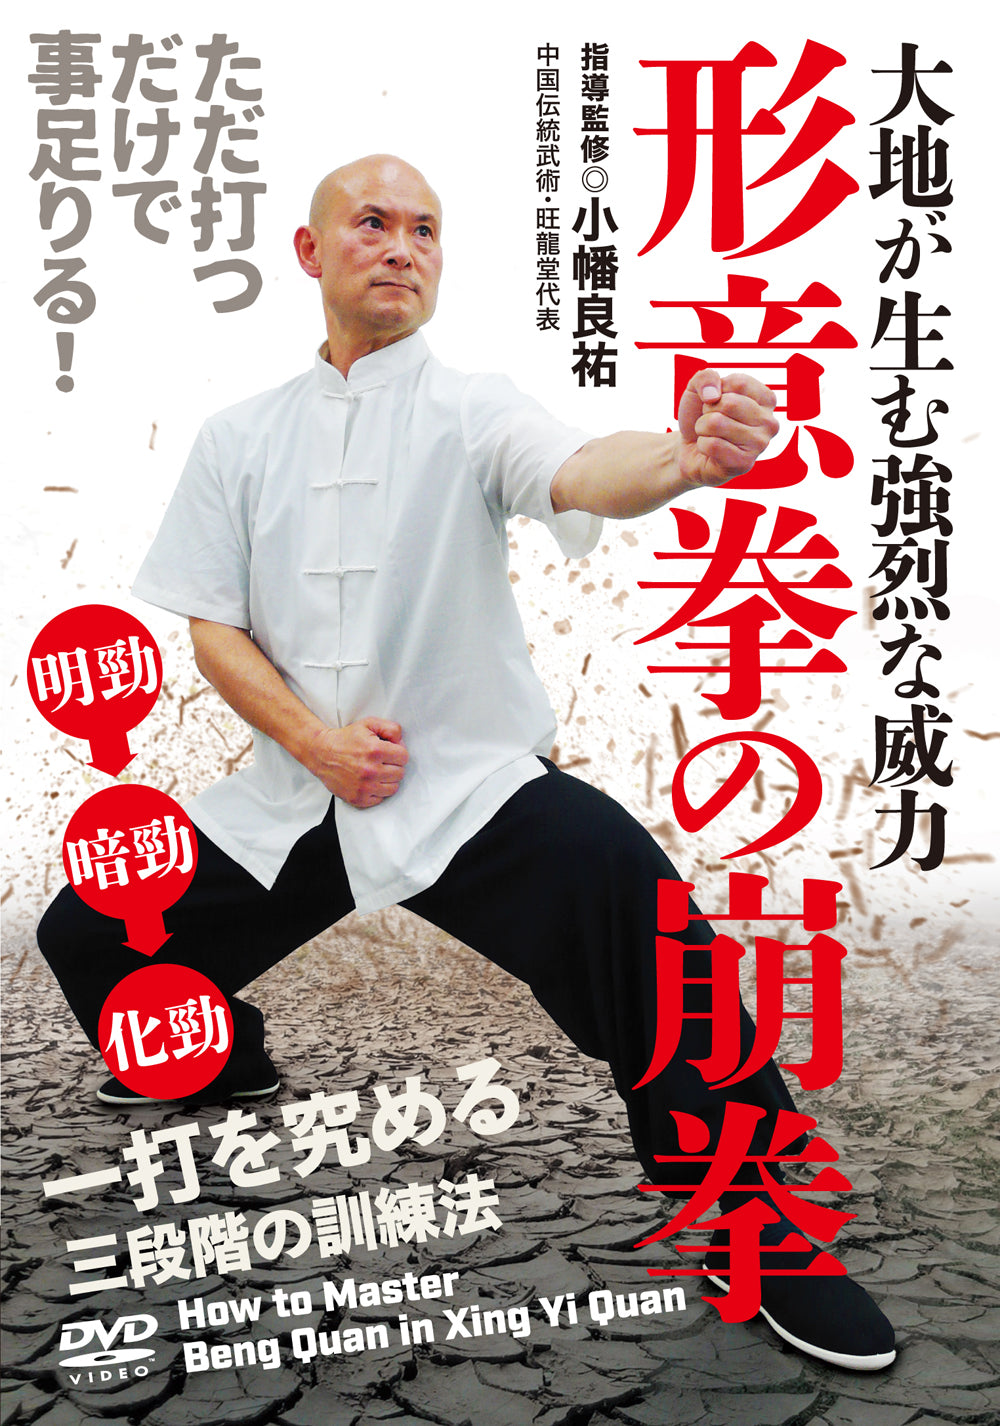 Cómo dominar Beng Quan en Xingyiquan DVD por Ryosuke Obata